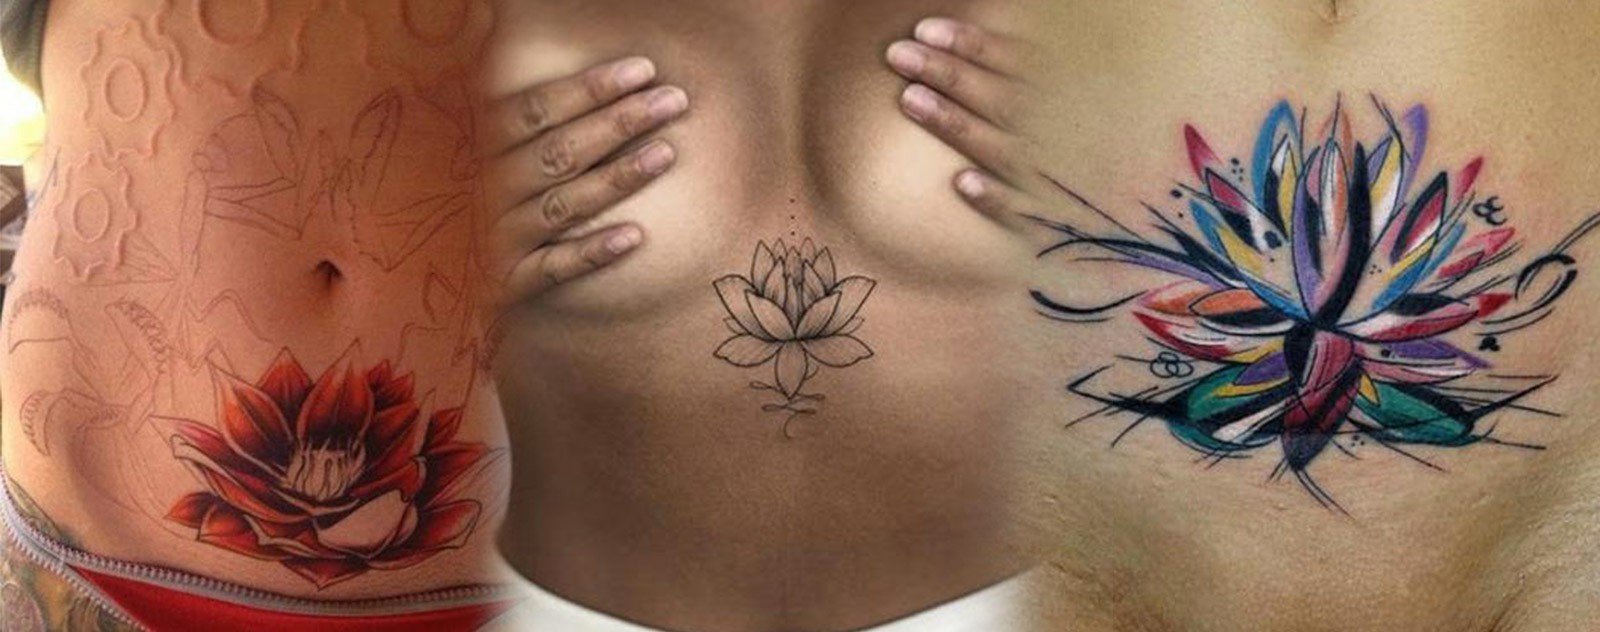 tattoos éphémère femme 